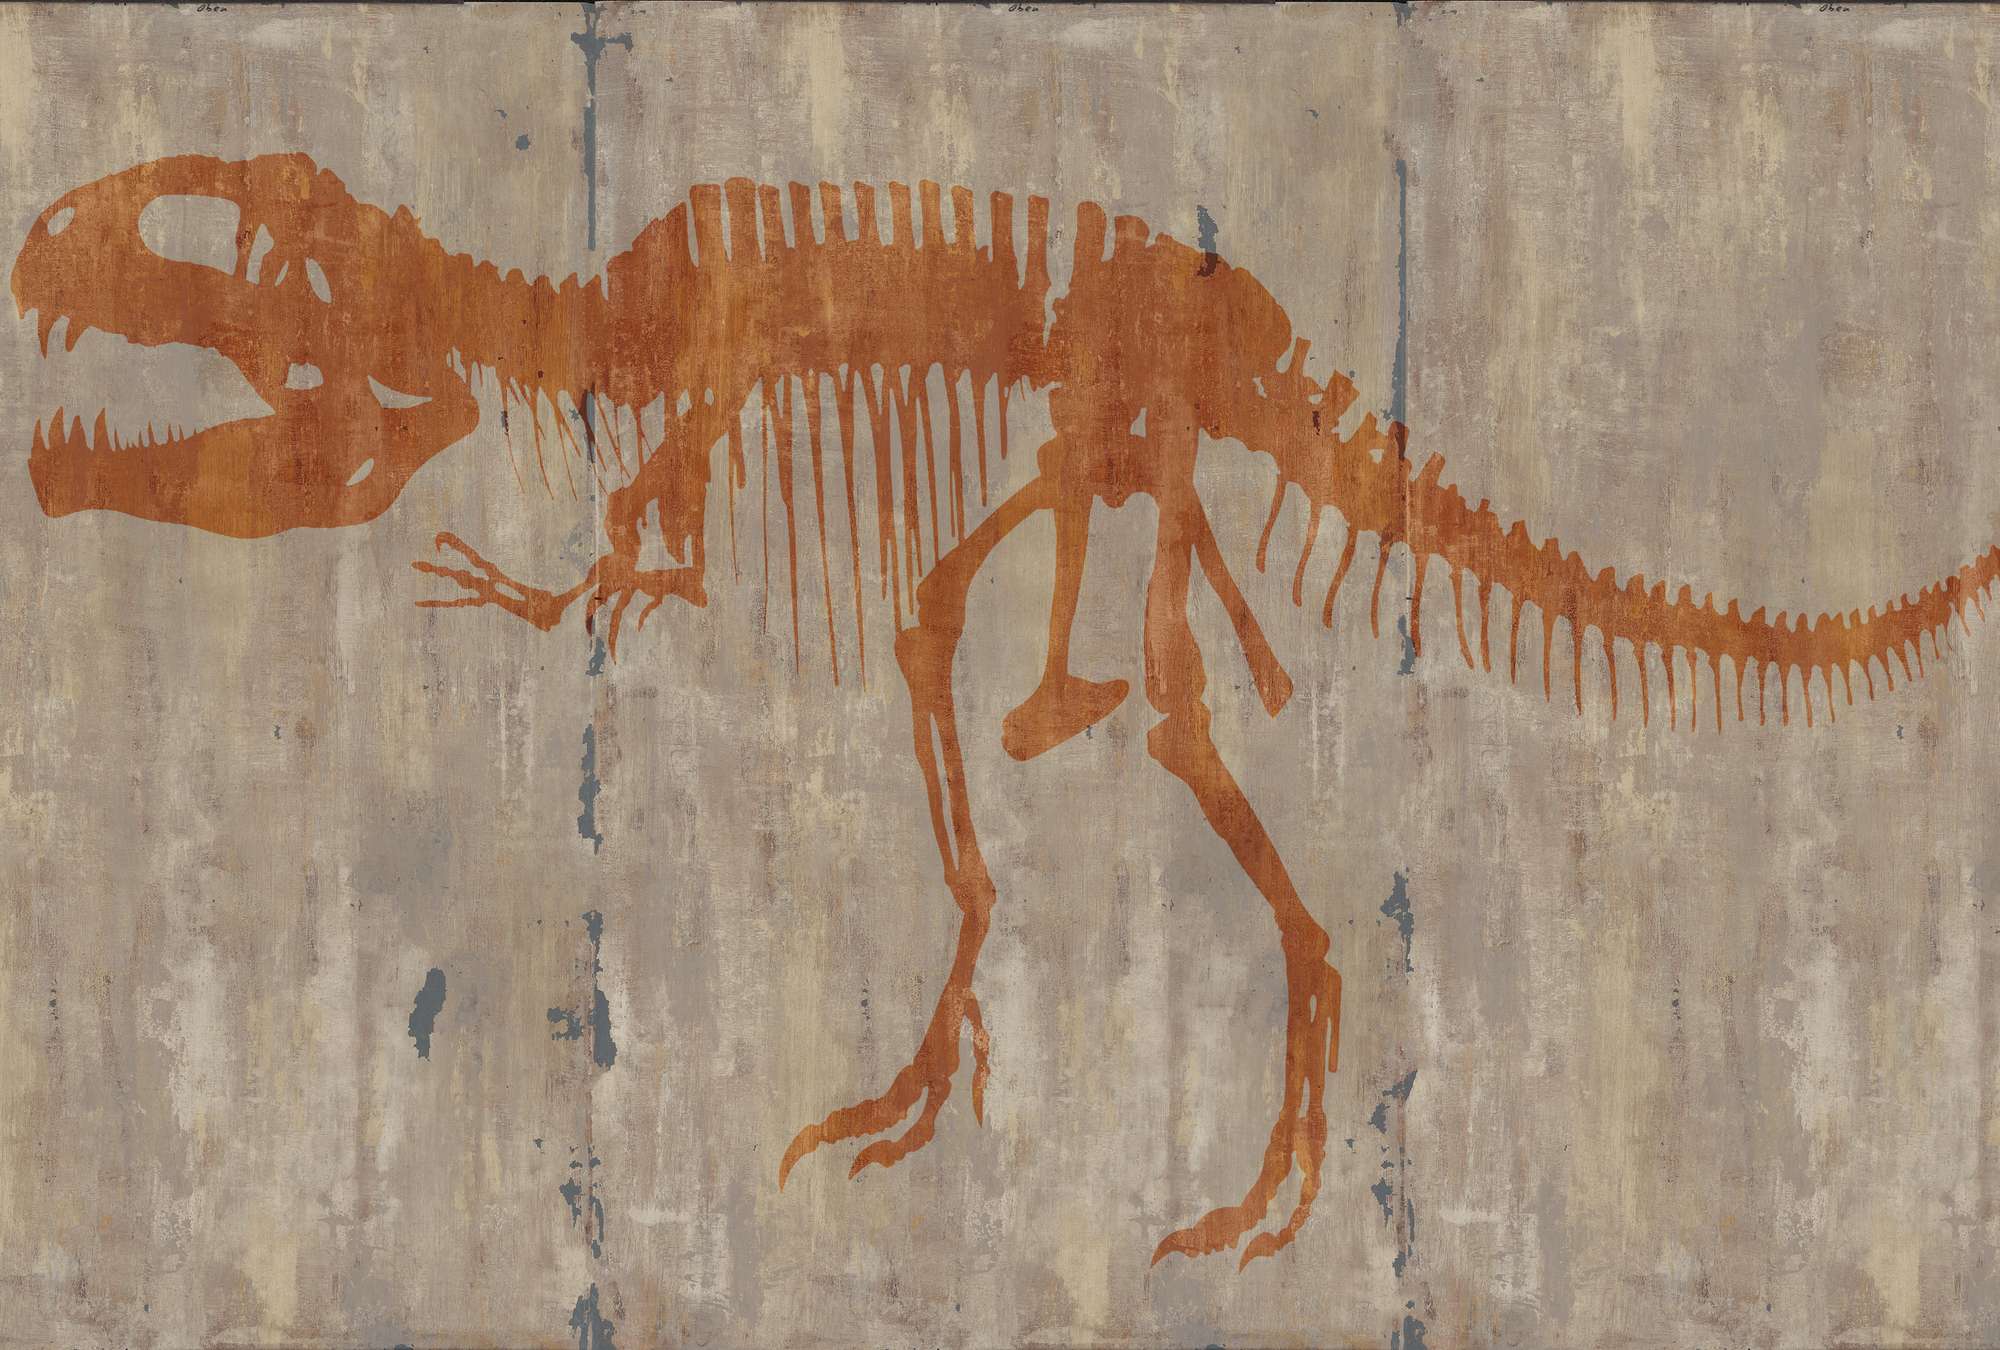             Fototapete Höhlenmalerei eines T-Rex
        